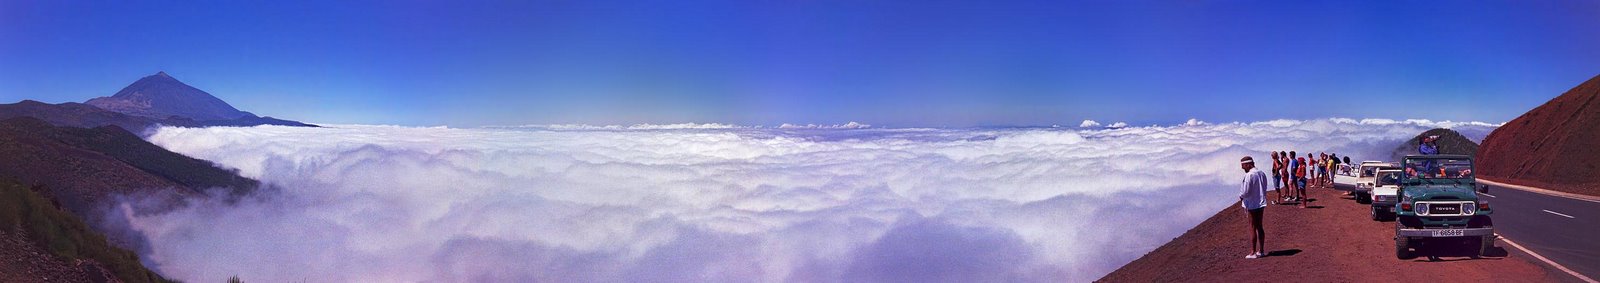 Mar de nubes. Tenerife.